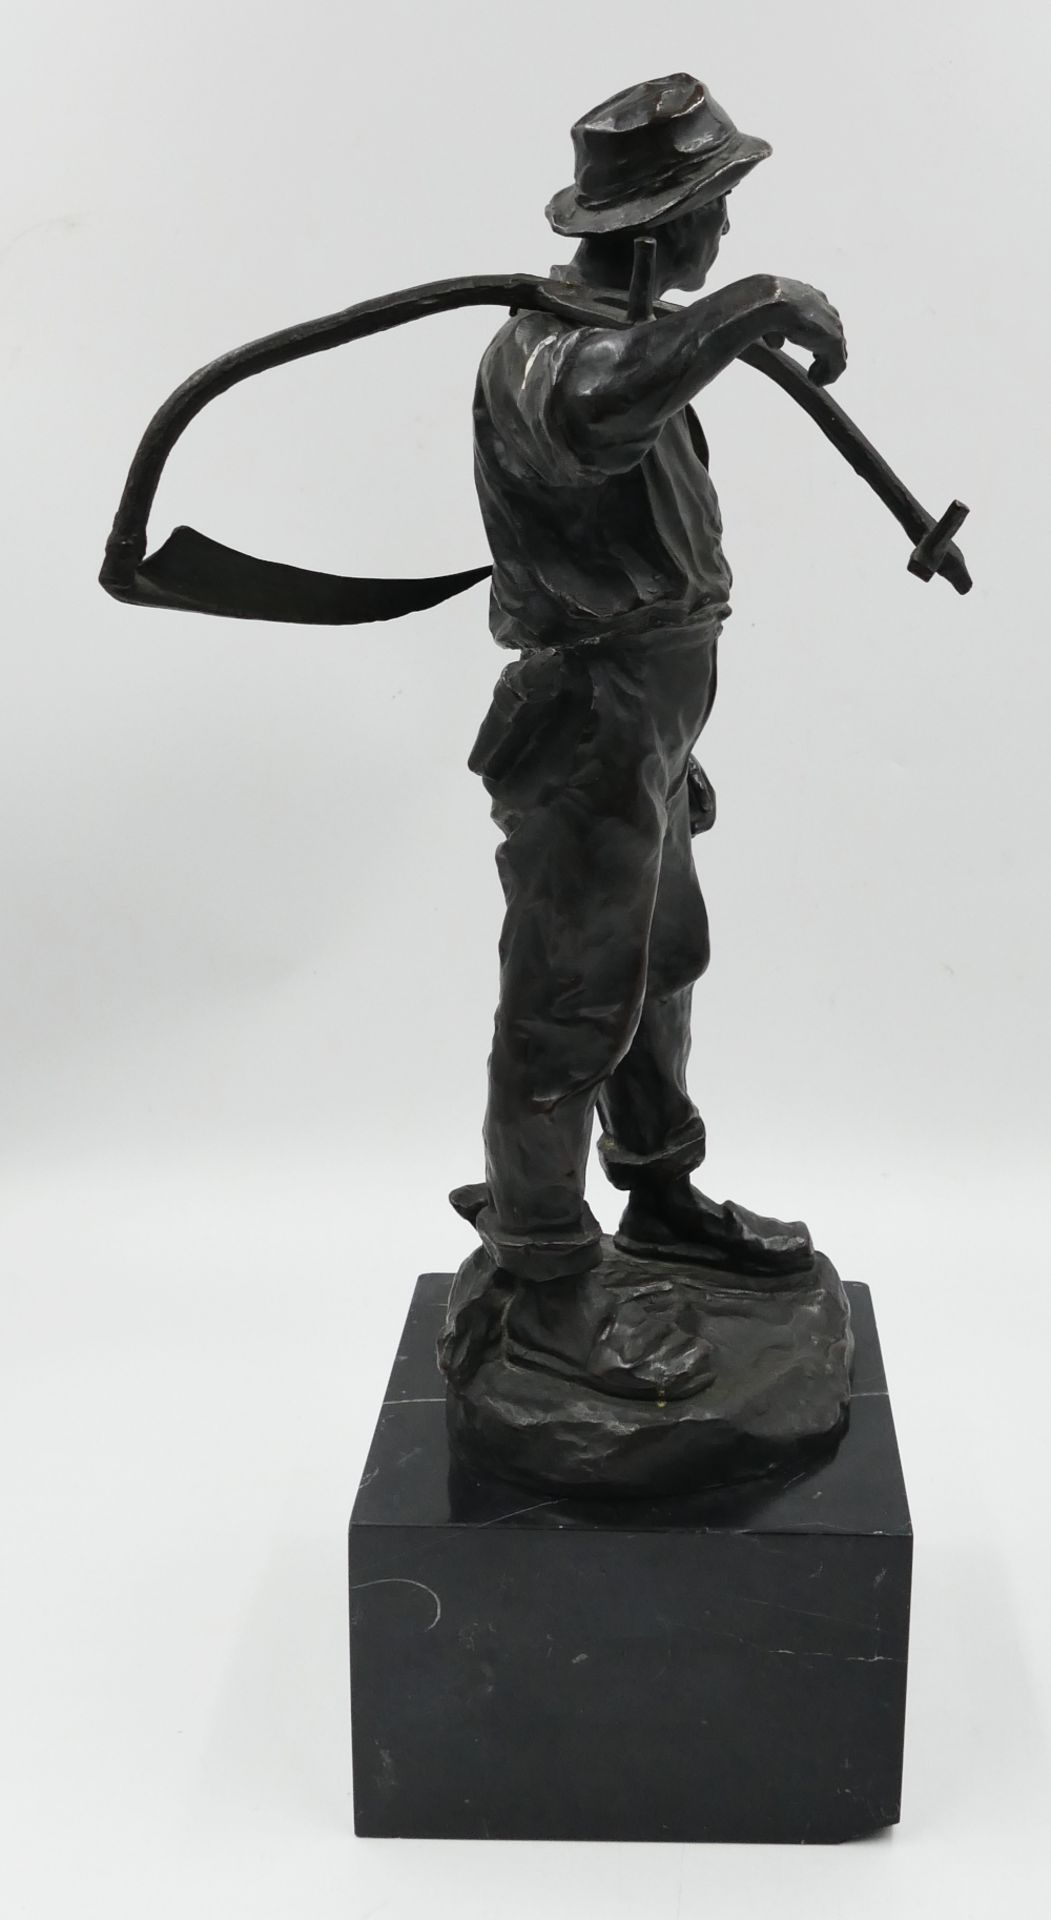 1 Bronzefigur rücks. bez. H. MÜLLER (wohl Hans M. 1873 Wien-1937 Ebd.) "Bauer mit Sense" ca. H 27,5c - Bild 3 aus 6